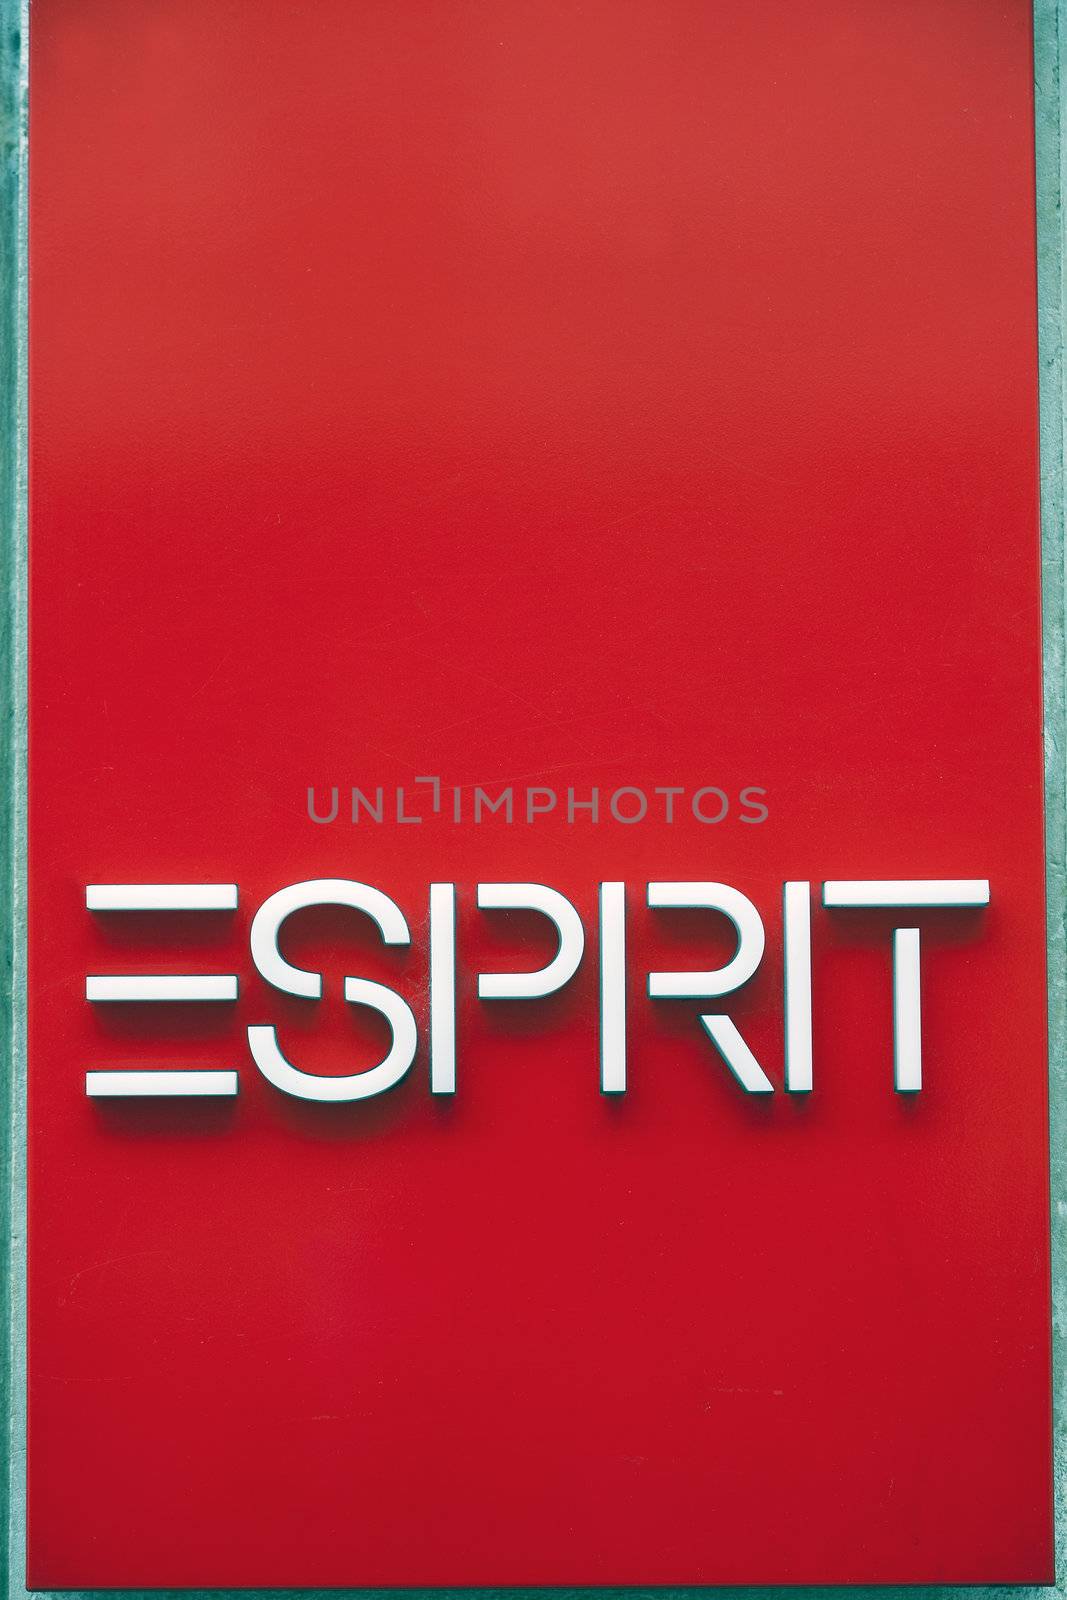 Esprit Logo by shadow69